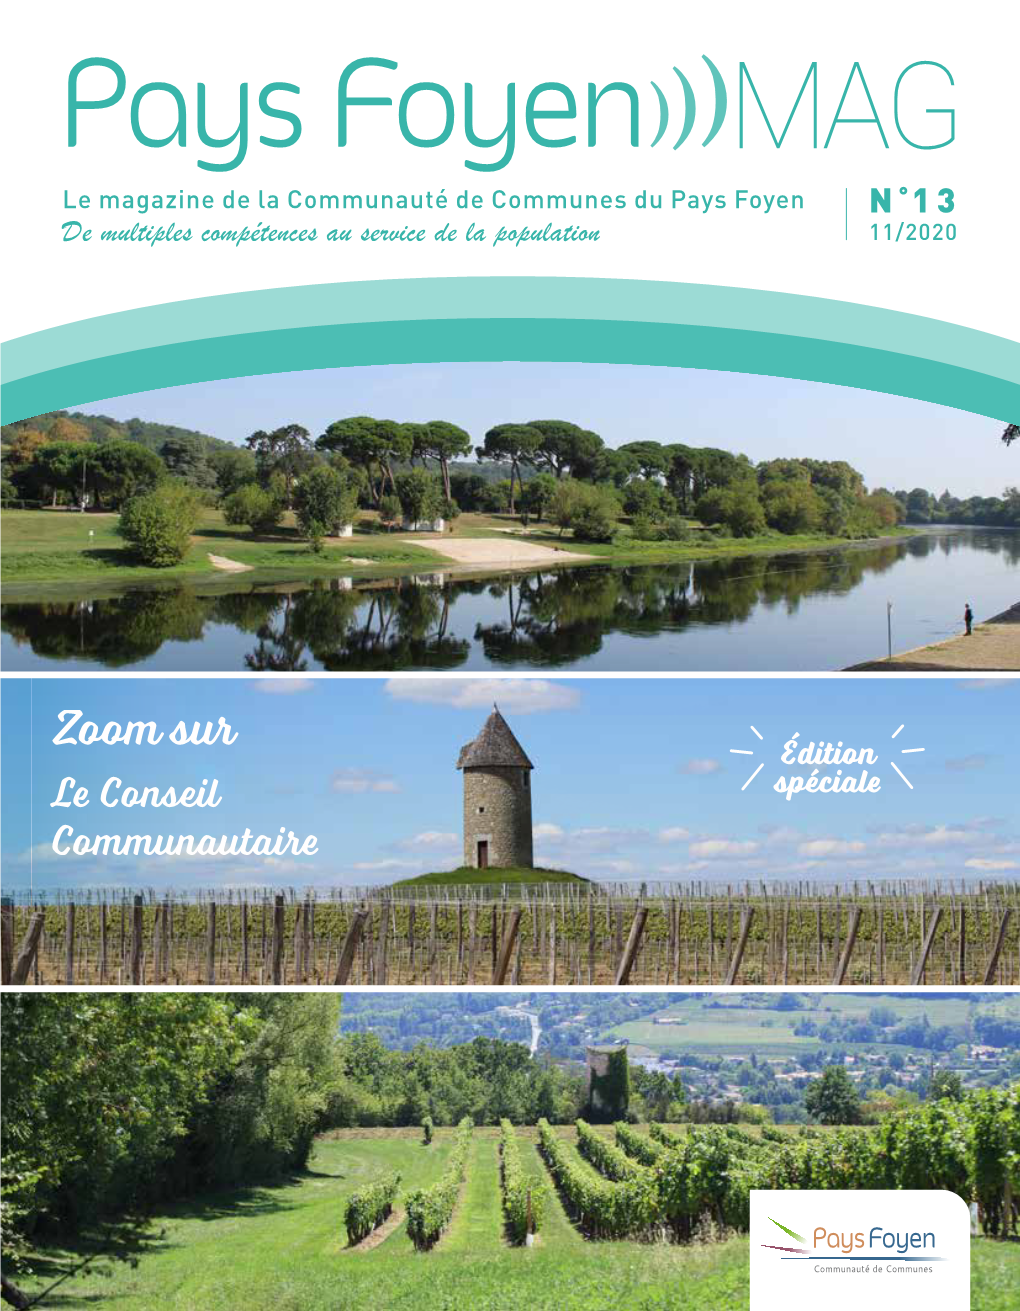 Pays Foyen MAG Le Magazine De La Communauté De Communes Du Pays Foyen N ° 13 De Multiples Compétences Au Service De La Population 11/2020